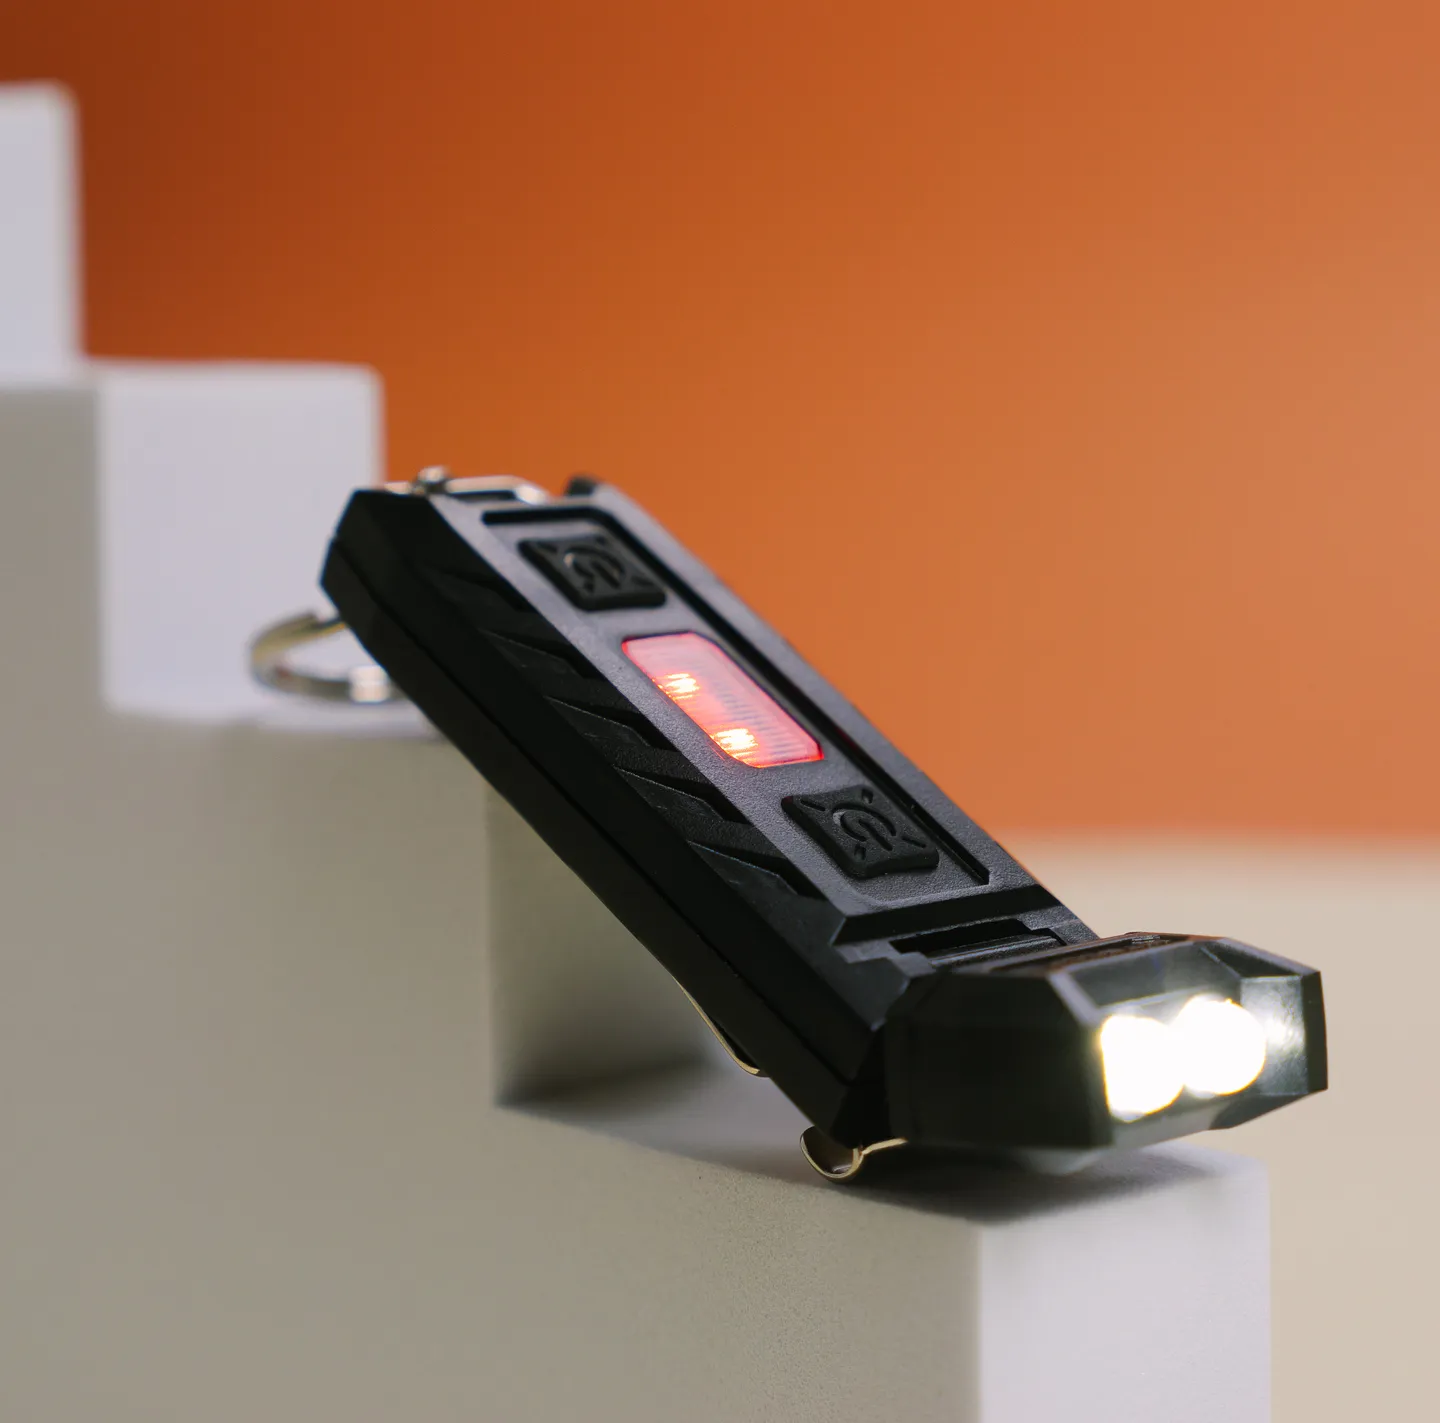 Alarm & Taschenlampe - Nitecore THUMB Lampe für Schlüsselanhänger